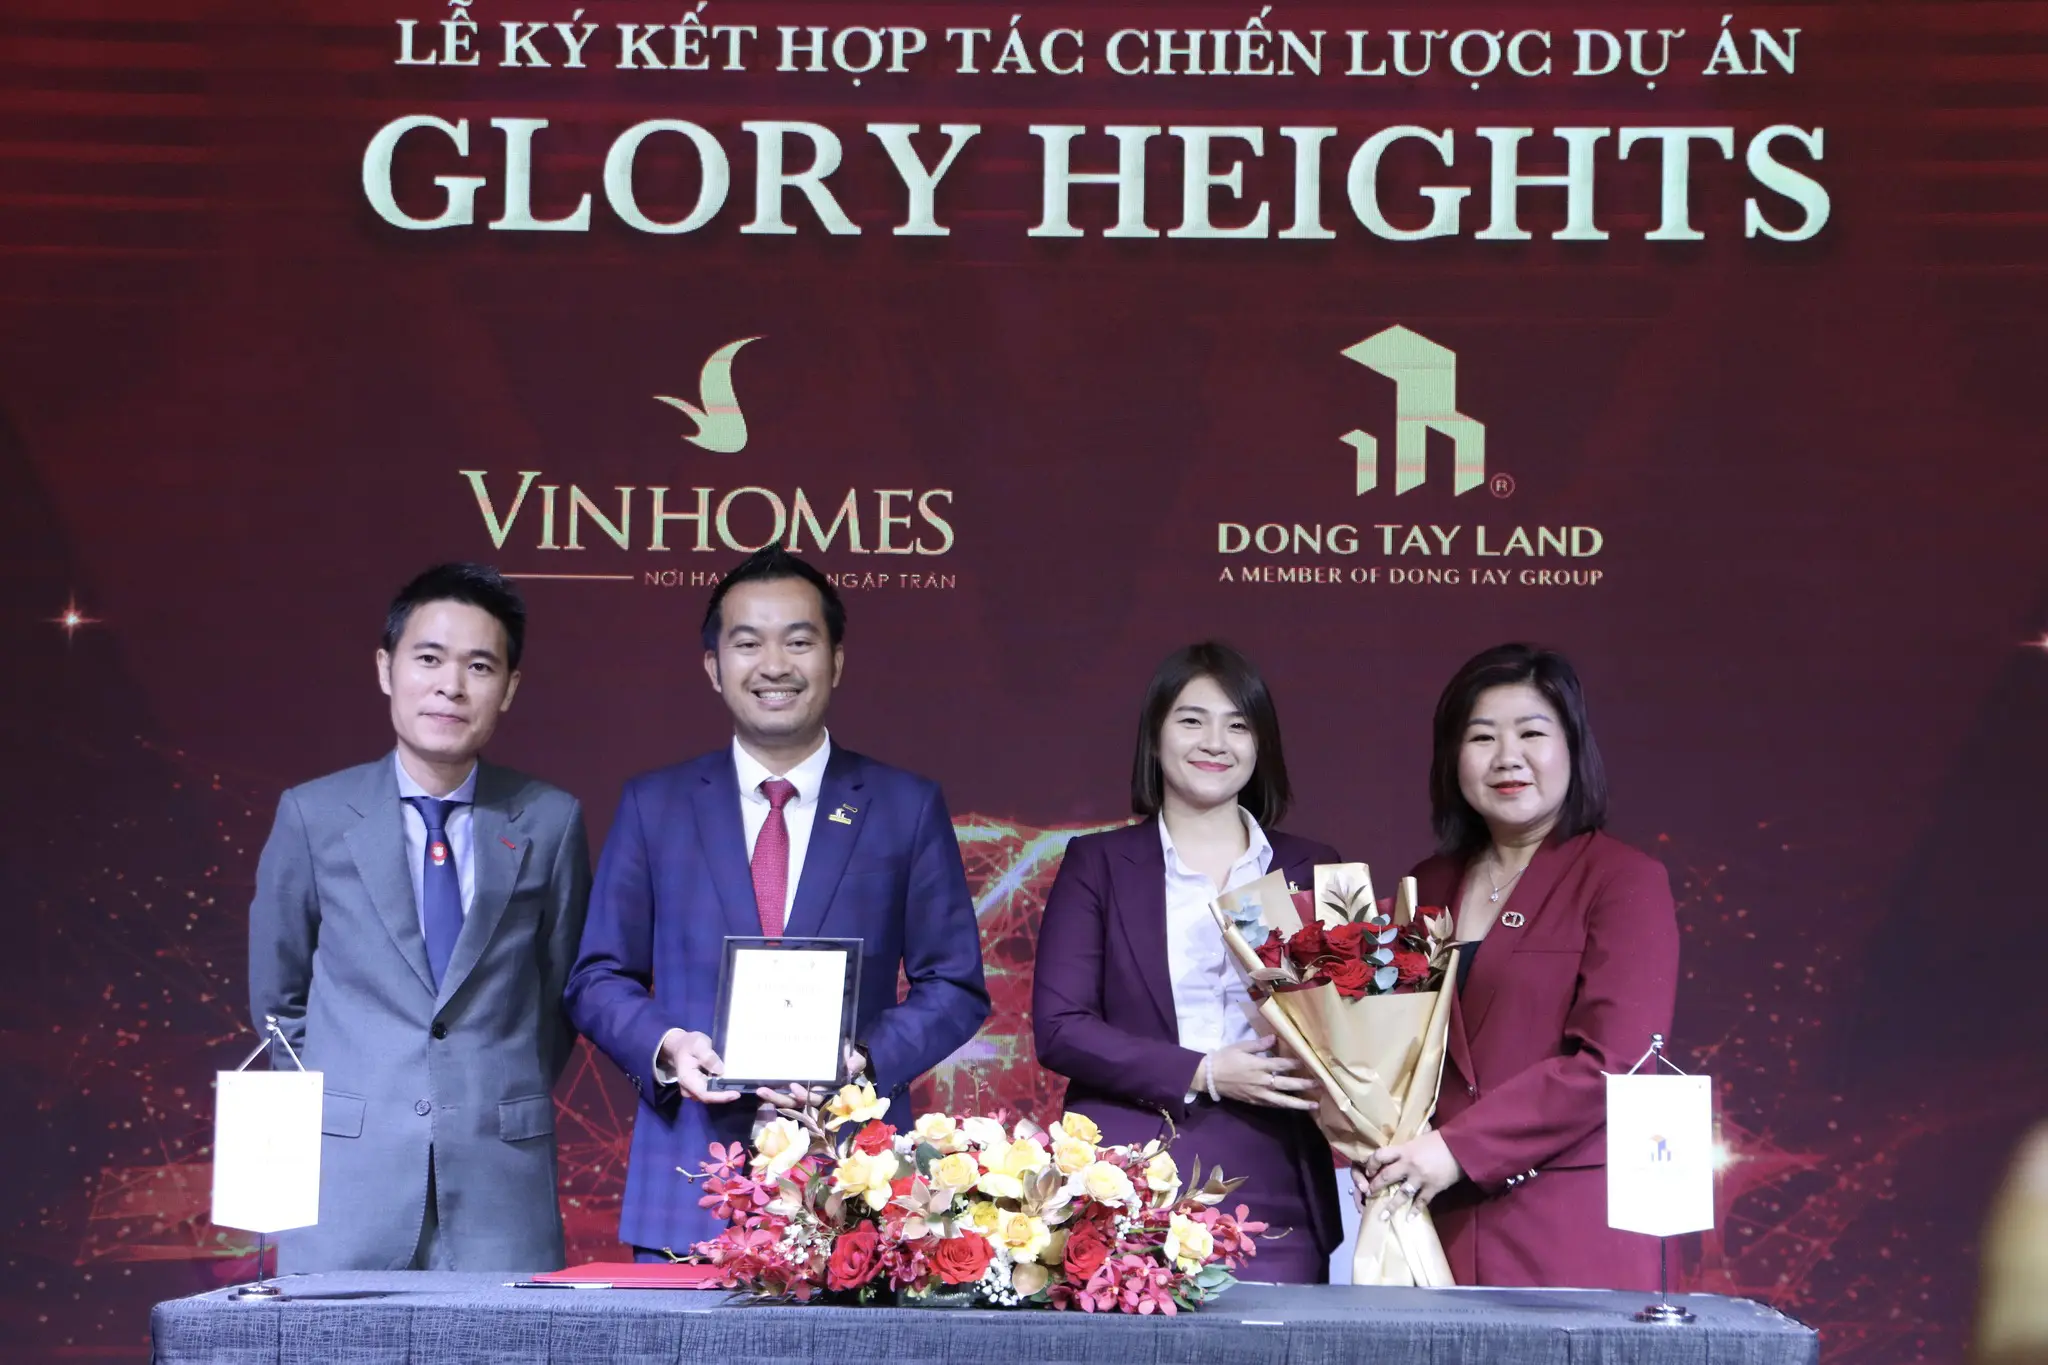 <strong>Đông Tây Land ký kết hợp tác chiến lược dự án Glory Heights với Vinhomes</strong>